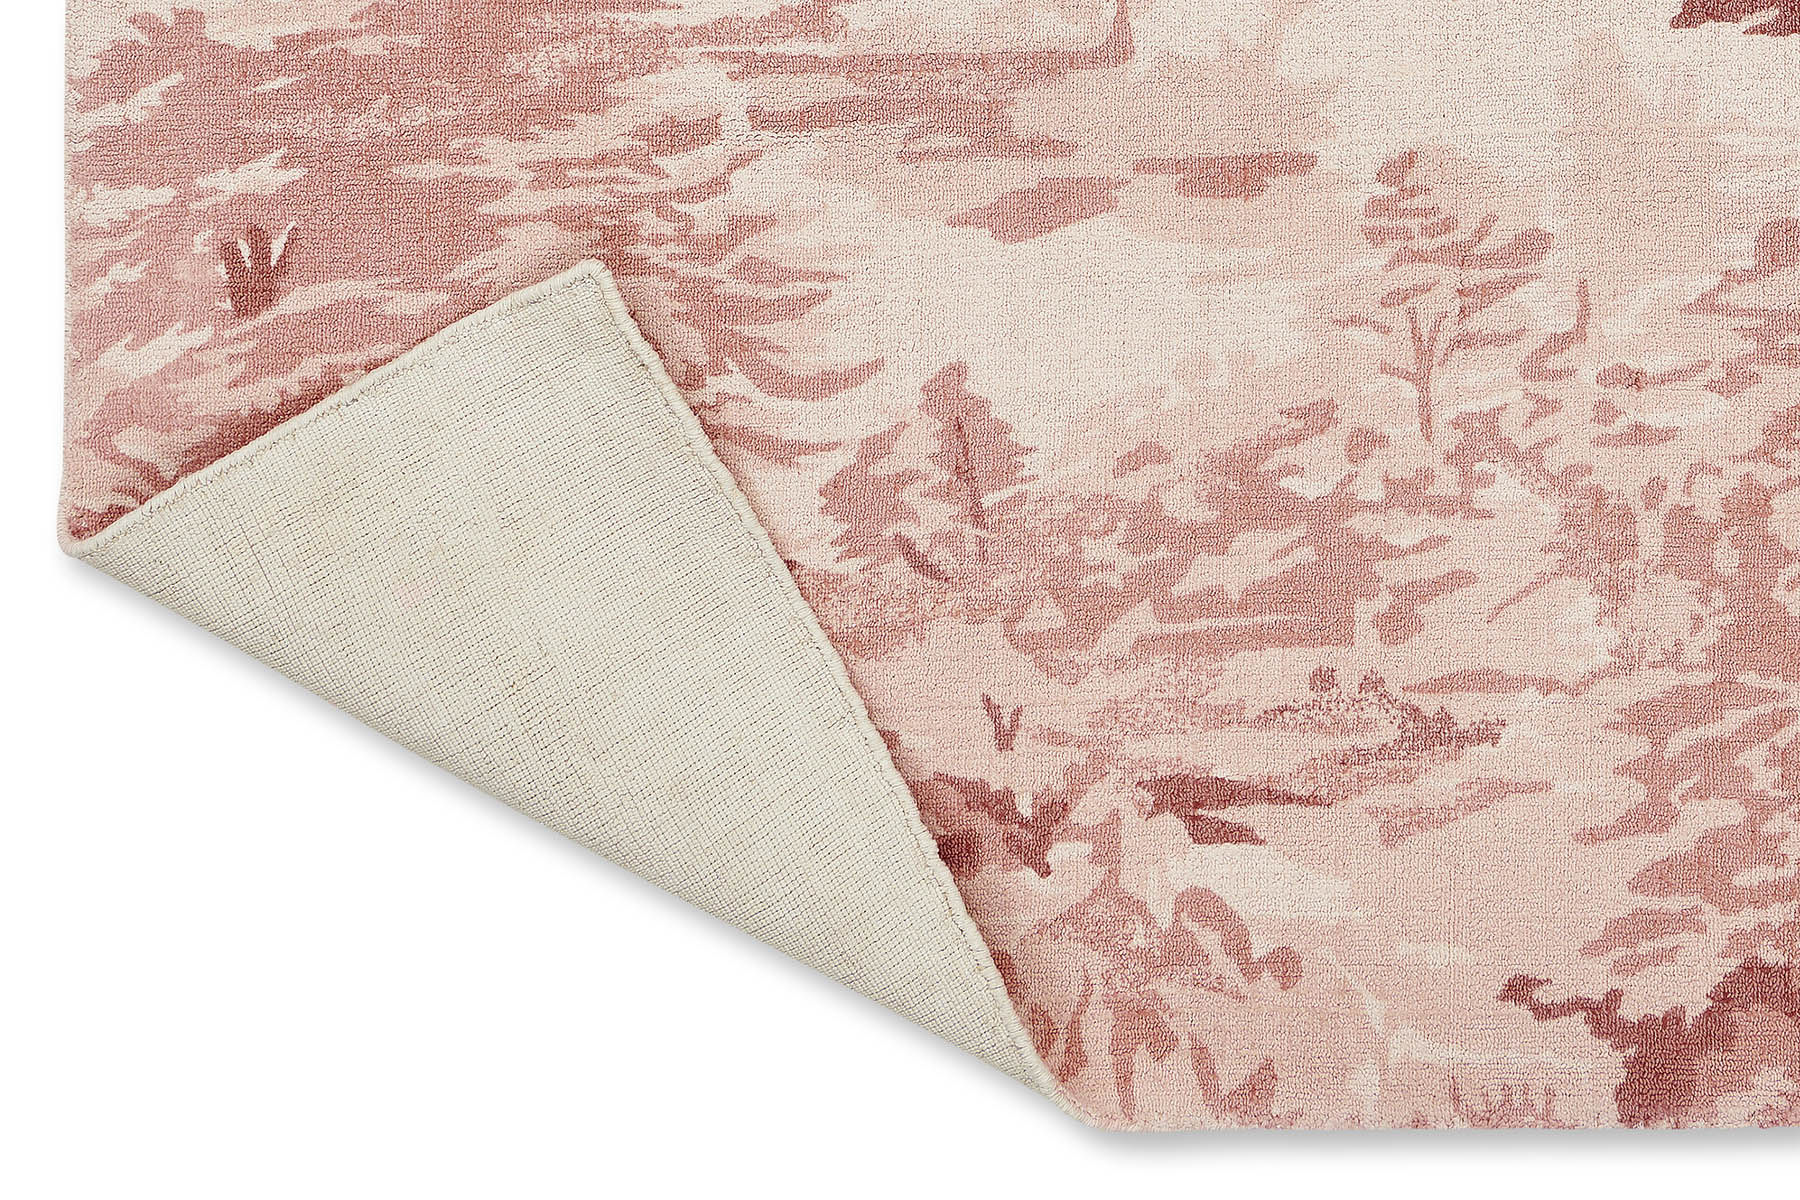 Landscape Light Pink Designer Rug ☞ Size: 6' 7" x 9' 2" (200 x 280 cm)